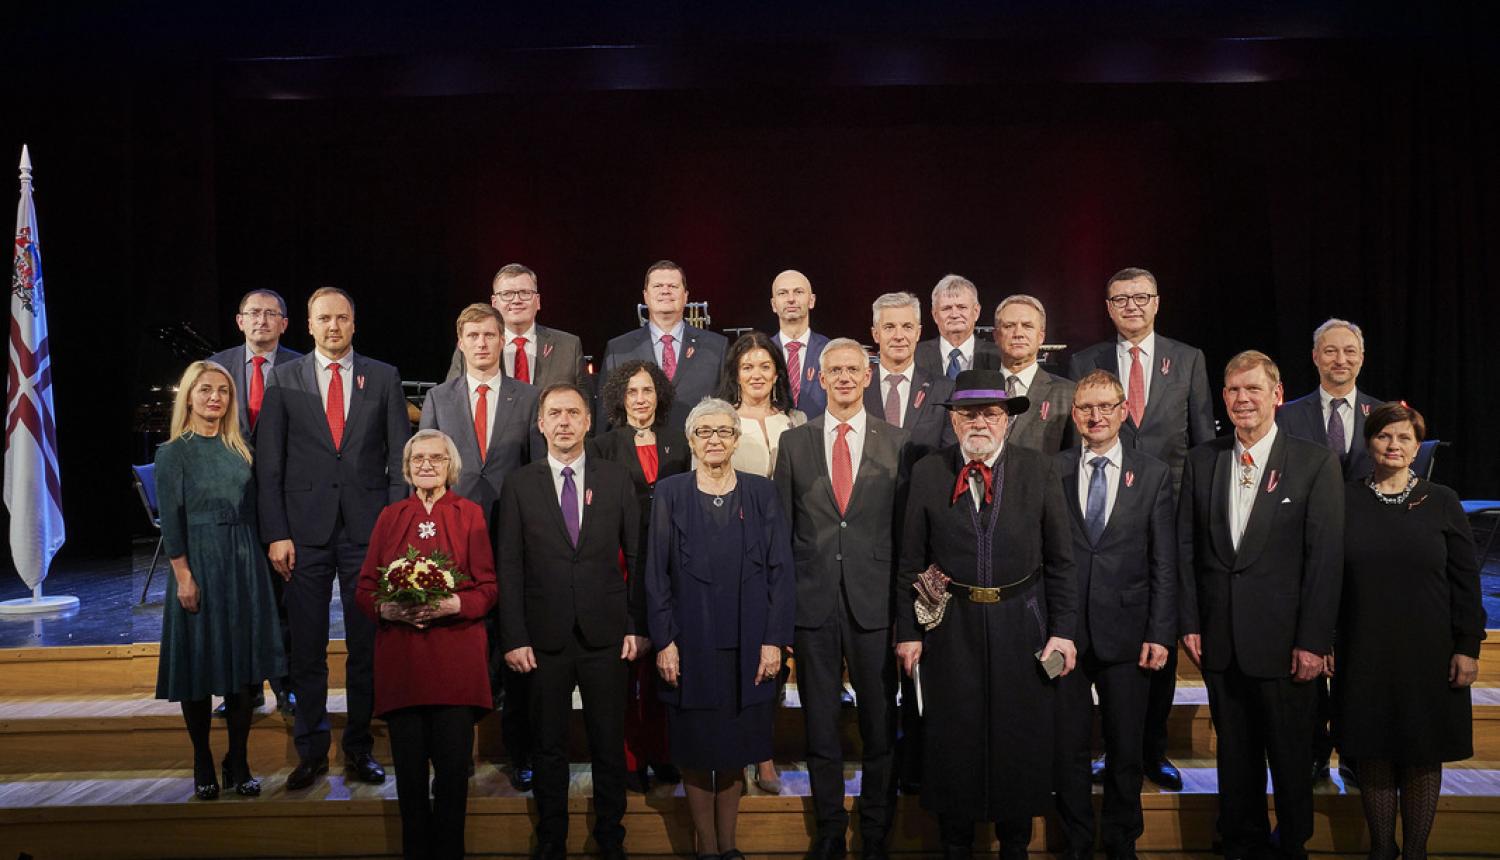 Valdība godina 2019. gada Ministru kabineta balvas laureātus